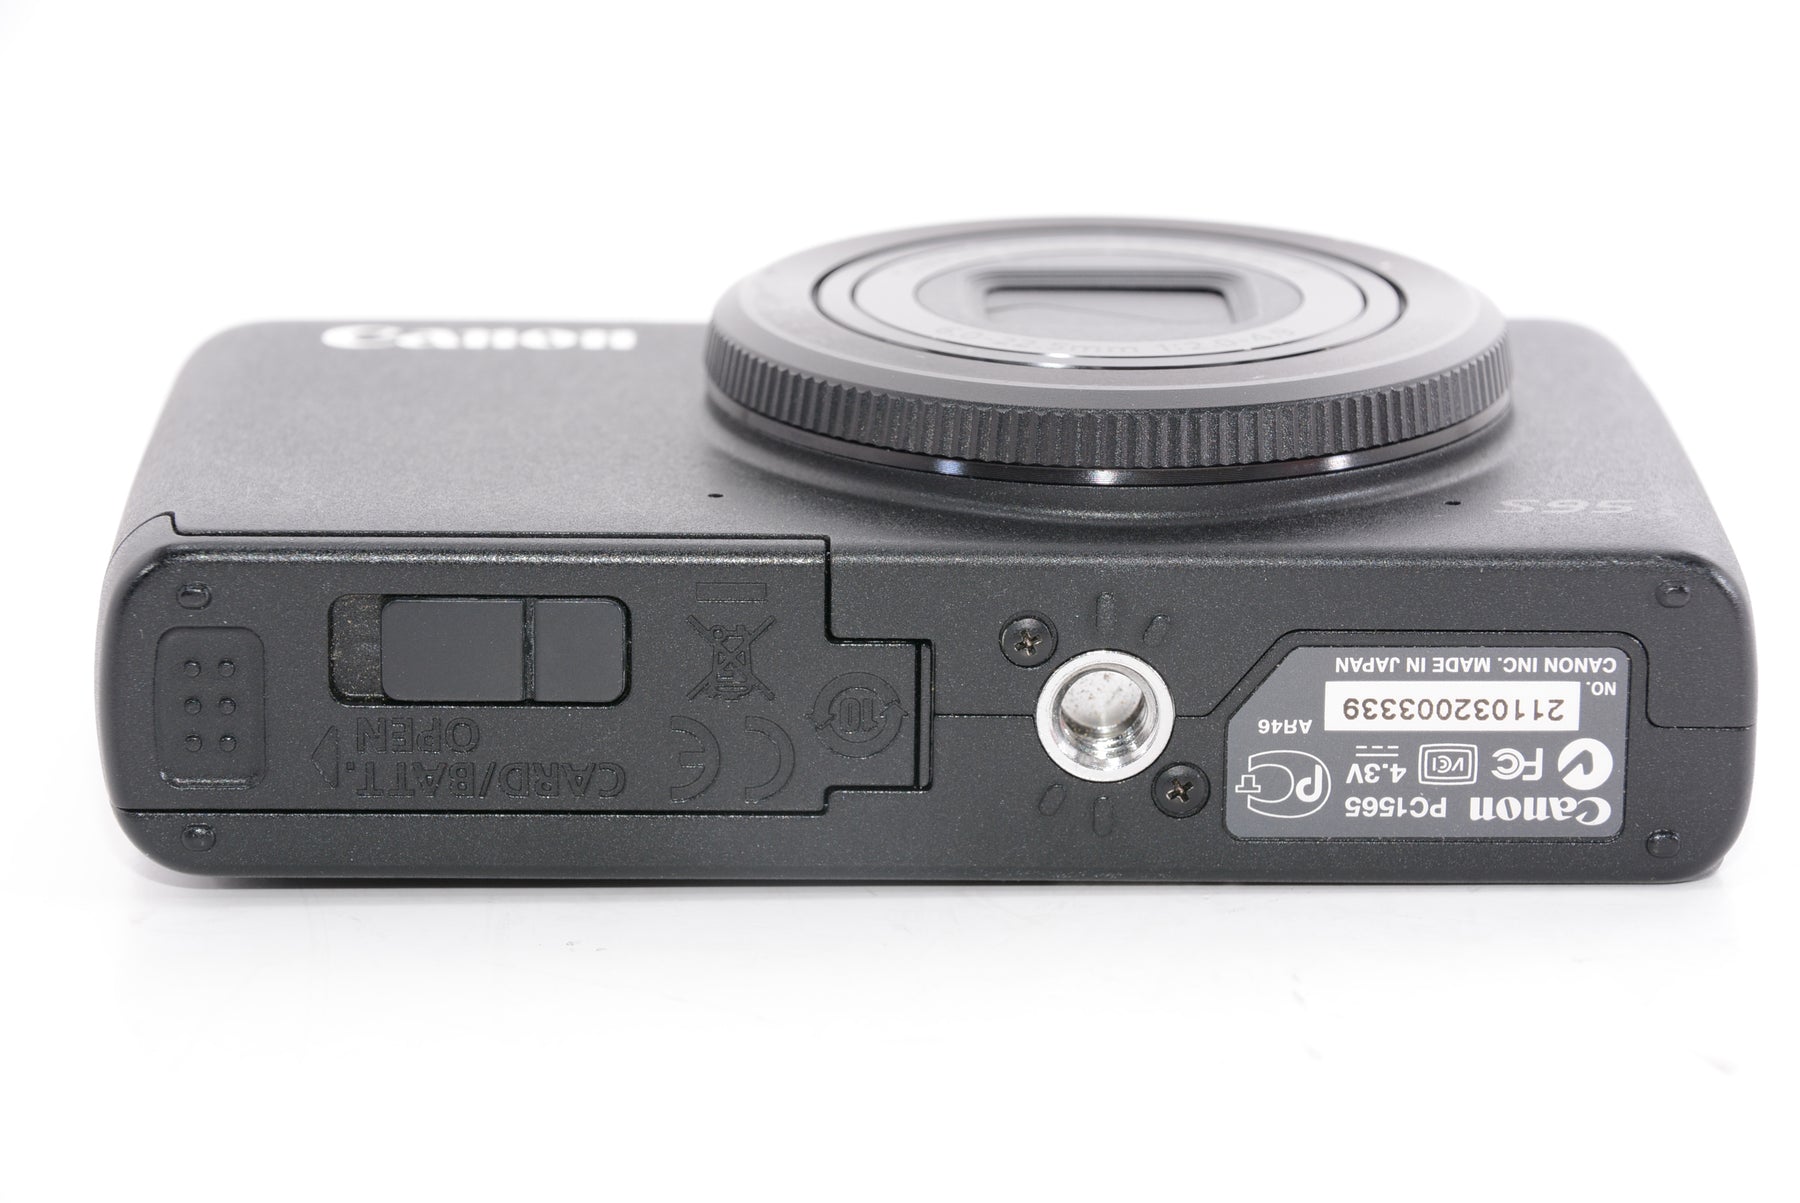 外観特上級】Canon デジタルカメラ Powershot S95 PSS95 1000万画素高 ...